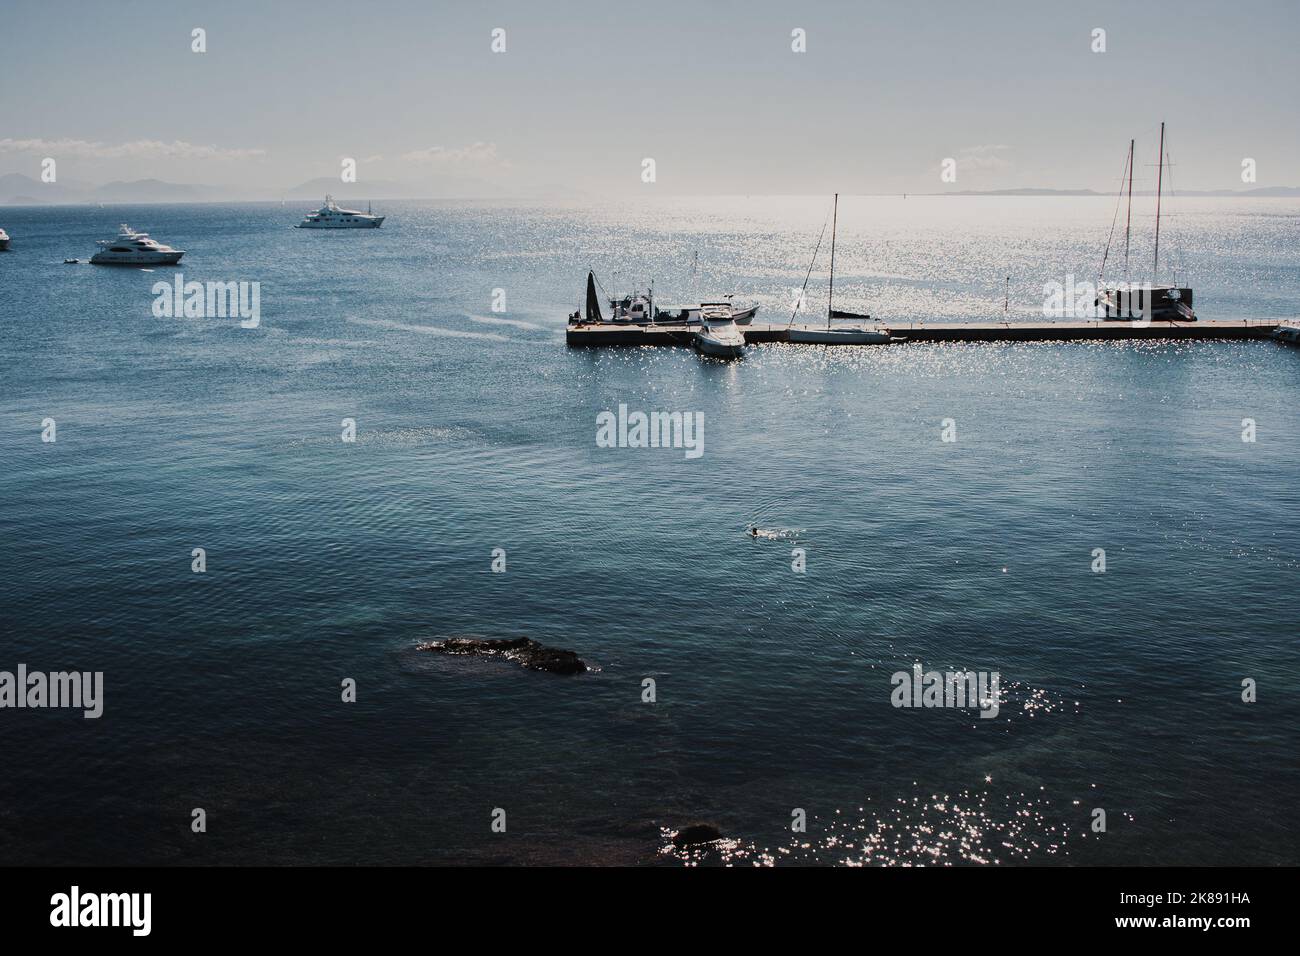 vista del muelle de yates del paseo marítimo de madera en aguas azules que reflejan la luz del sol en grecia Foto de stock